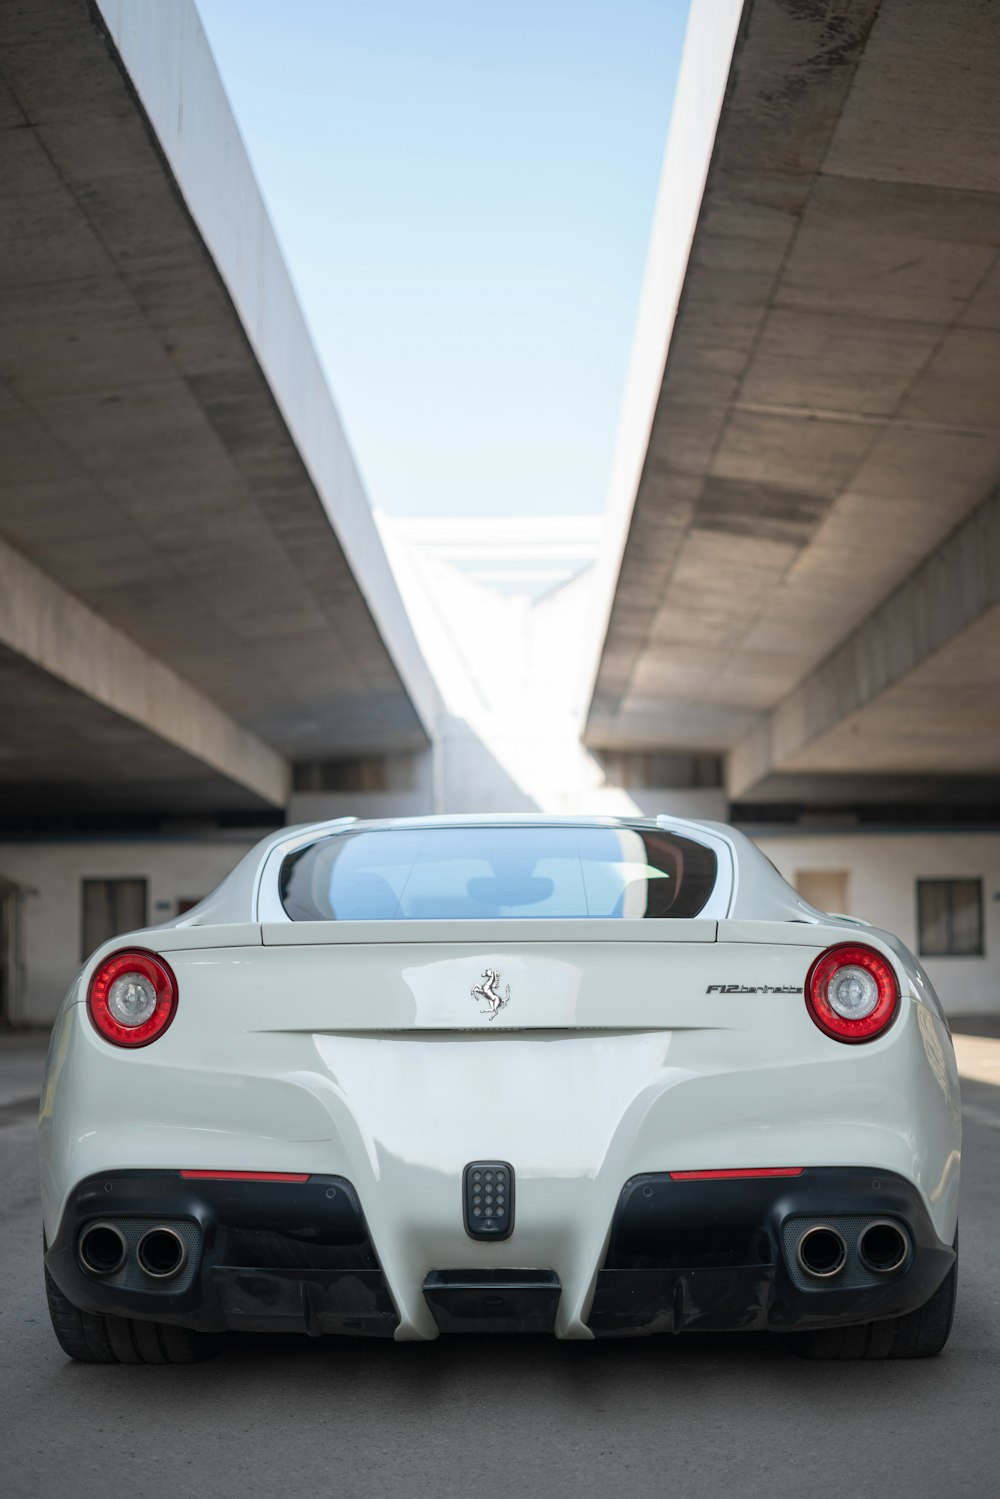 veicolo Ferrari bianco parcheggiato sotto il ponte